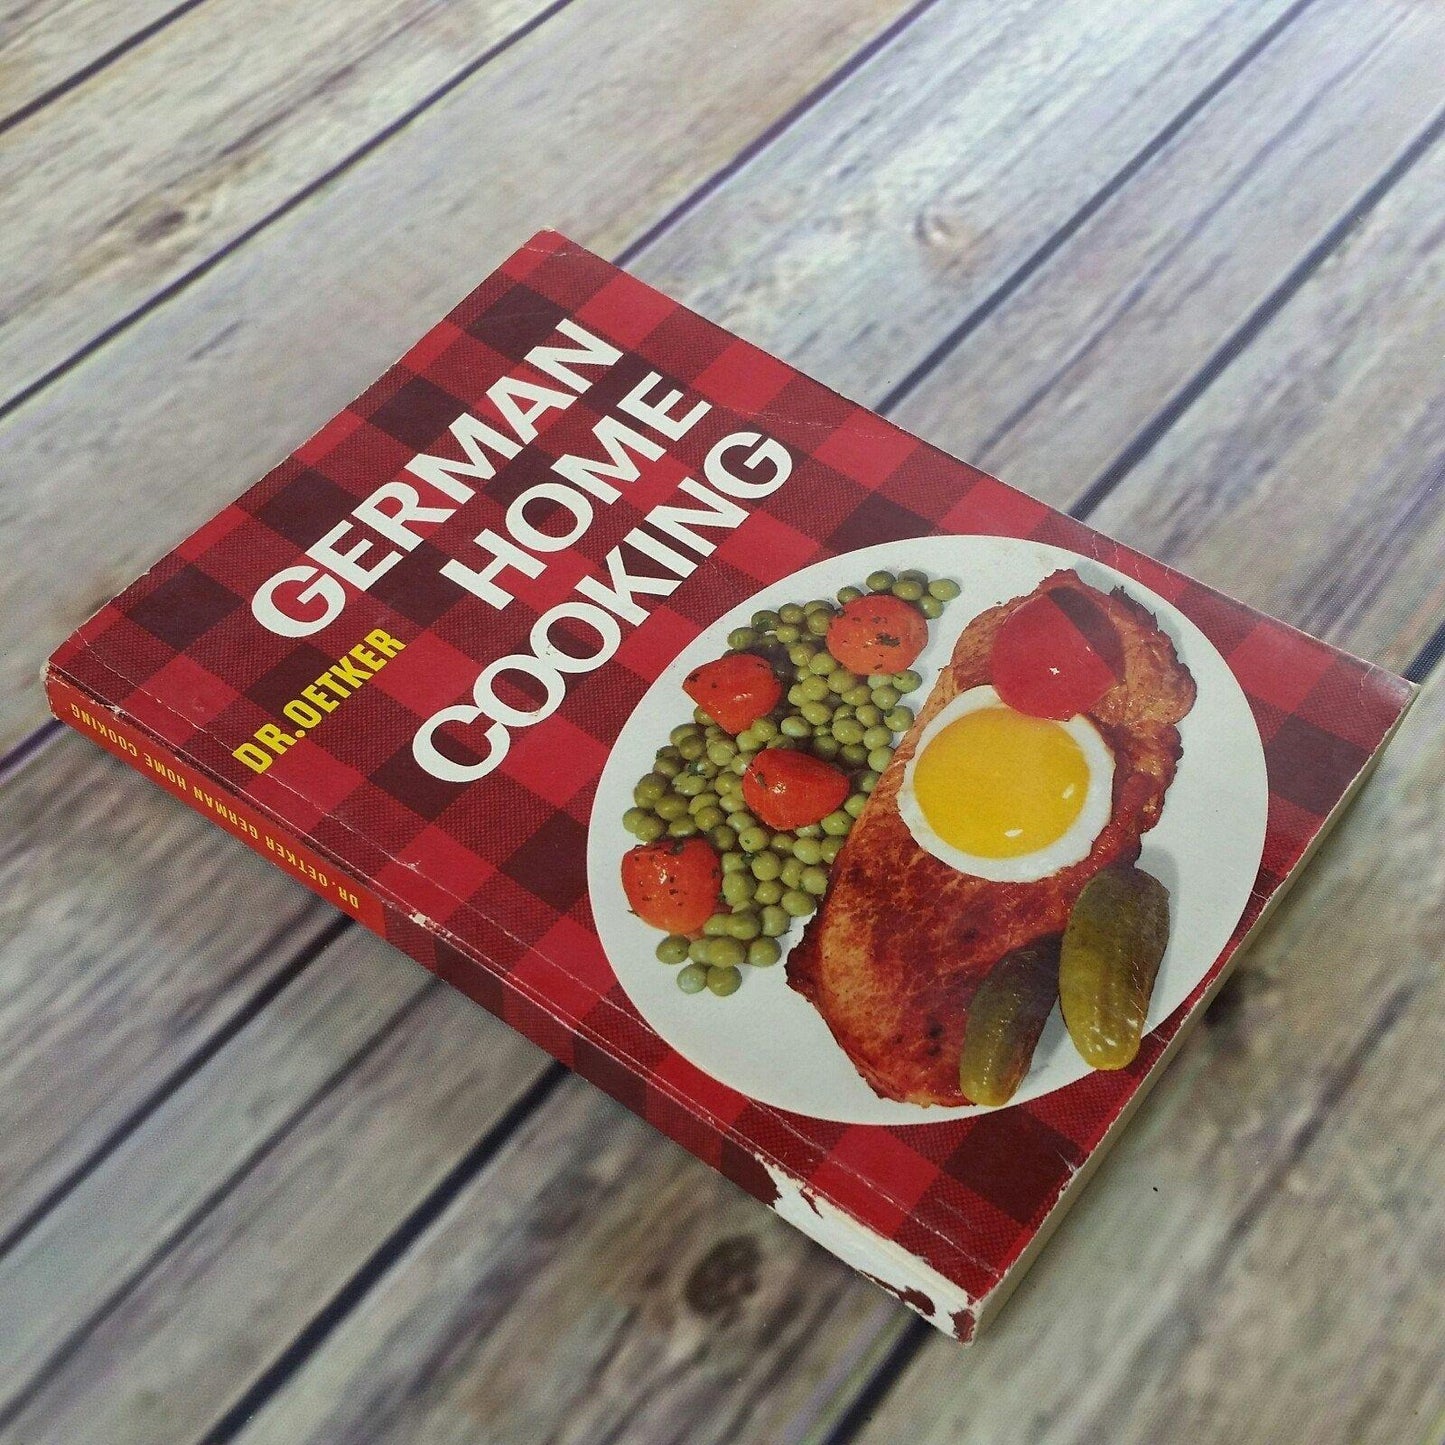 Vintage Cookbook Dr Oetker German Home Cooking 1971 5th Edition Paperback